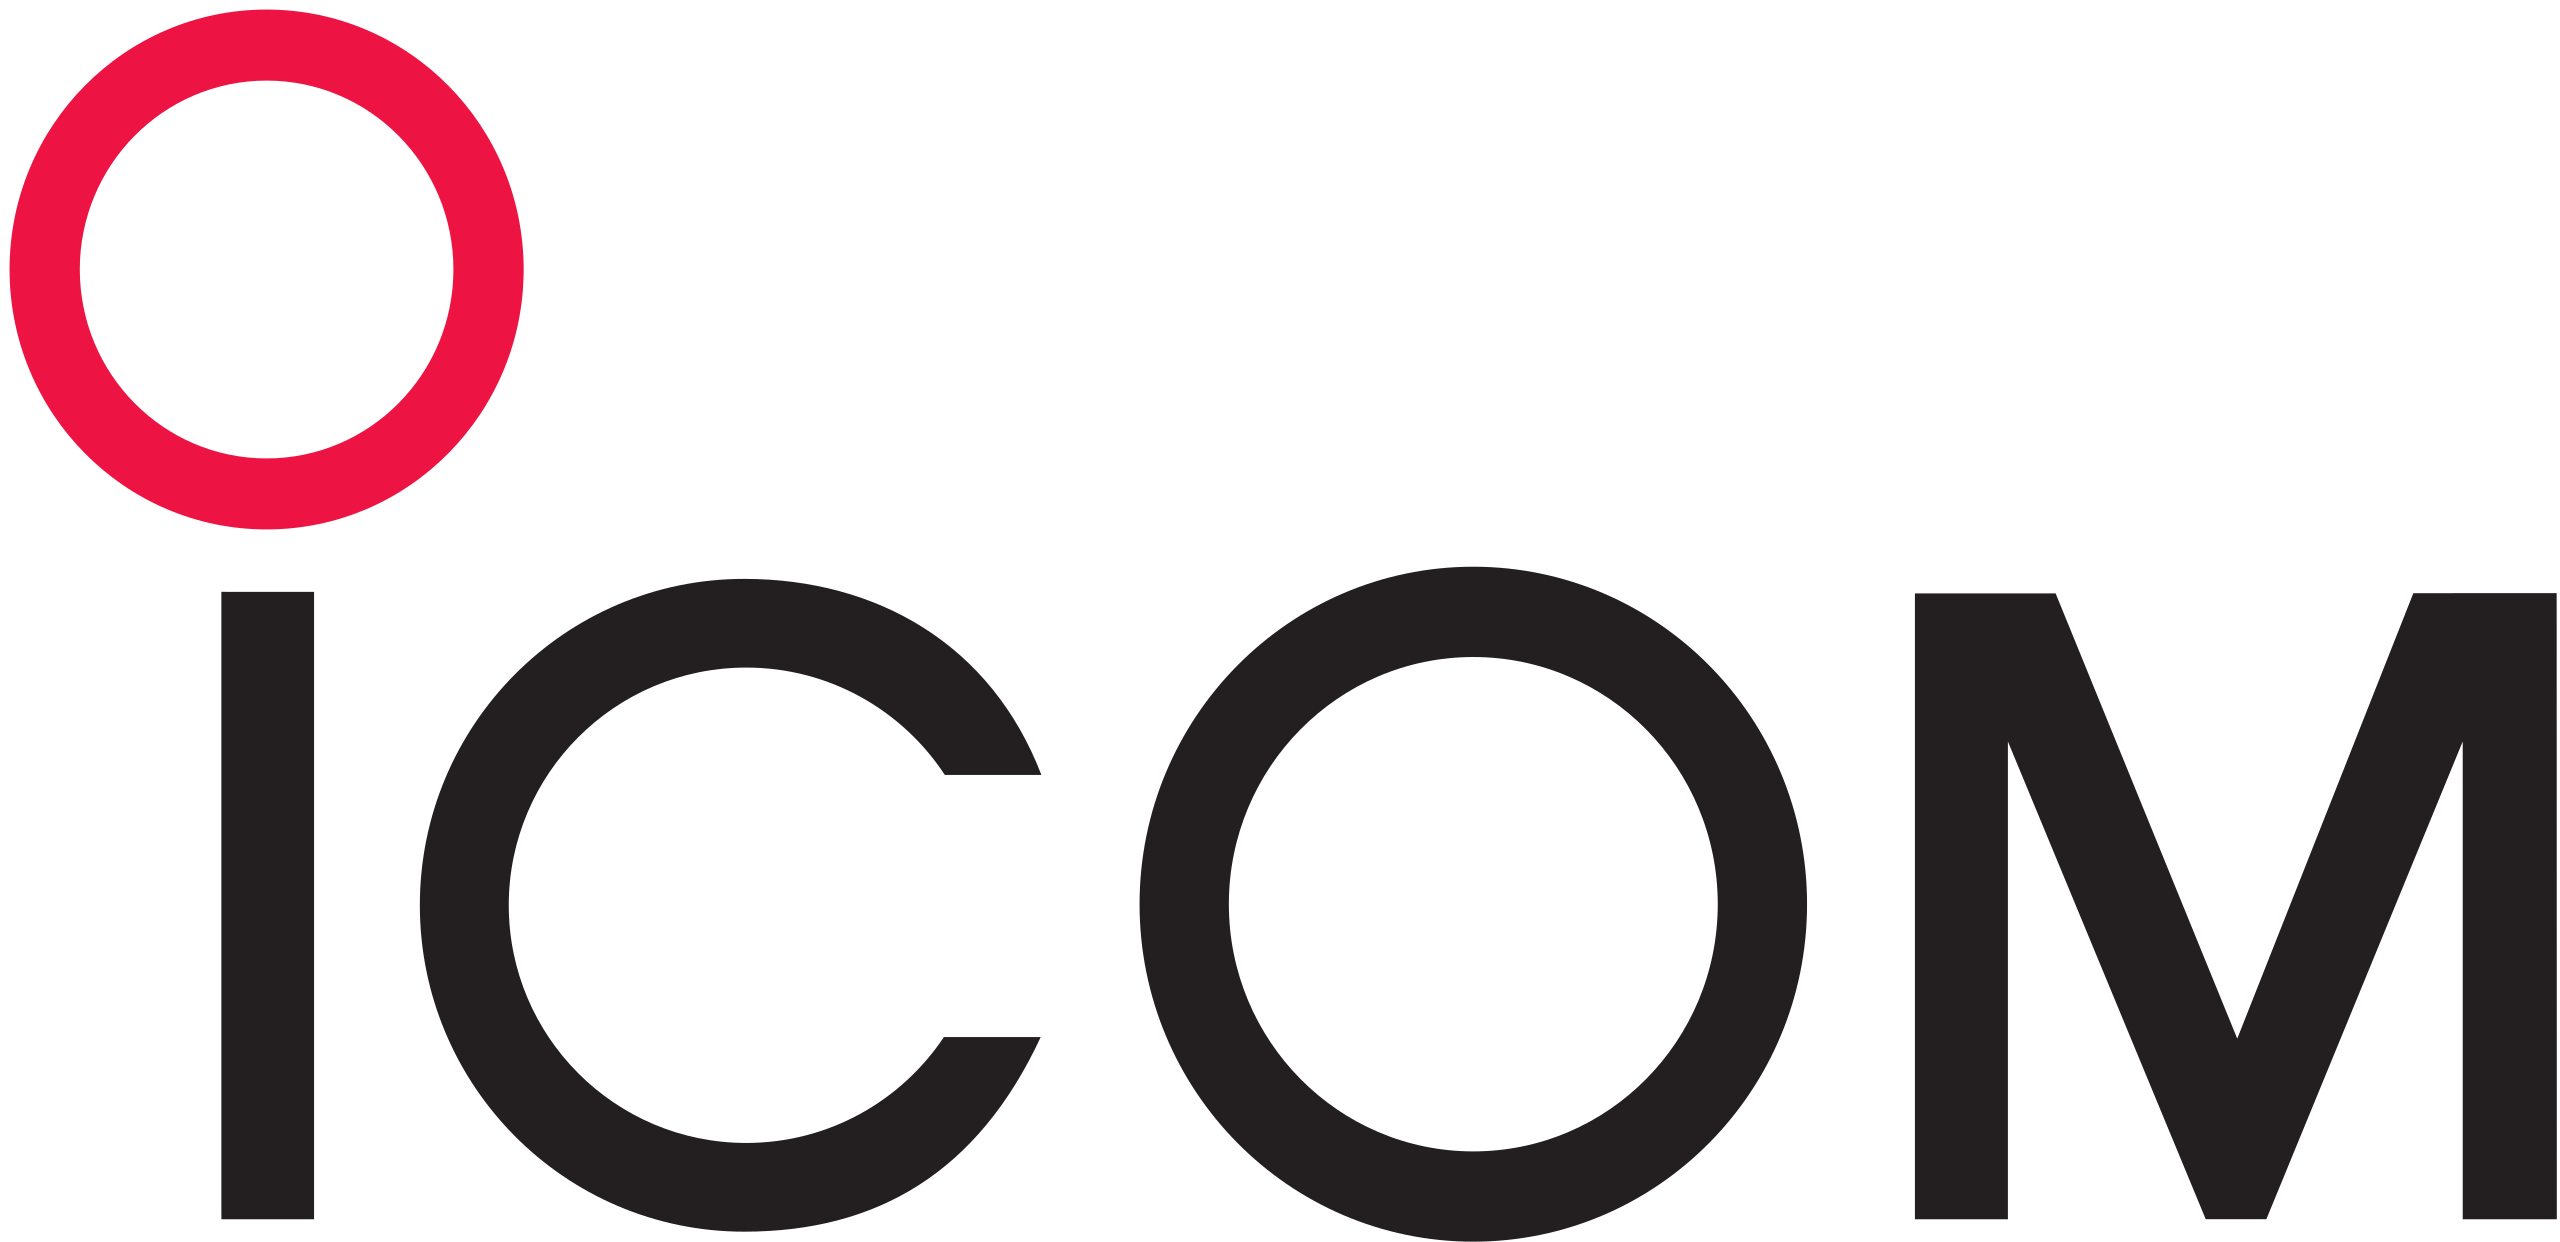 Icom_logo.svg